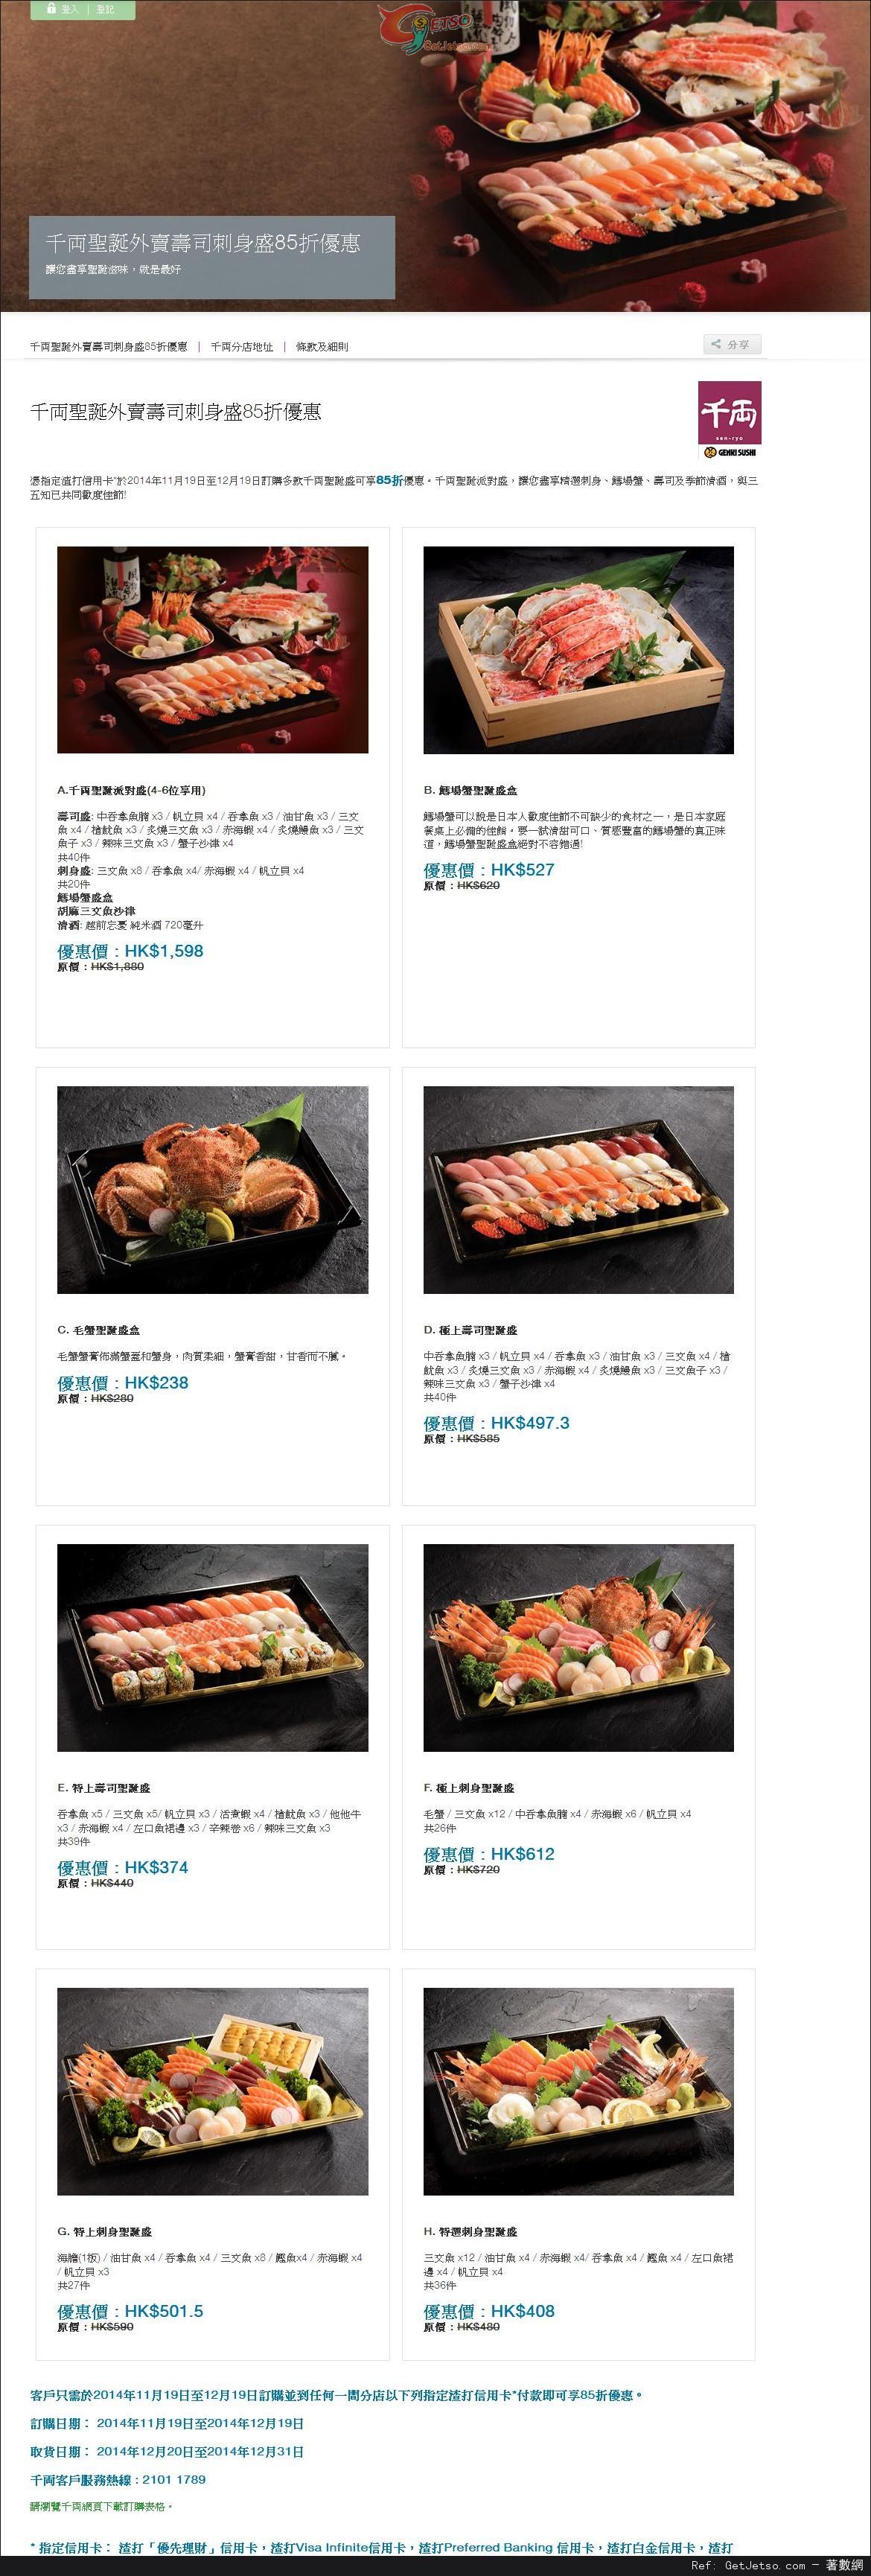 渣打信用卡享千両聖誕外賣壽司刺身盛85折優惠(至14年12月19日)圖片1